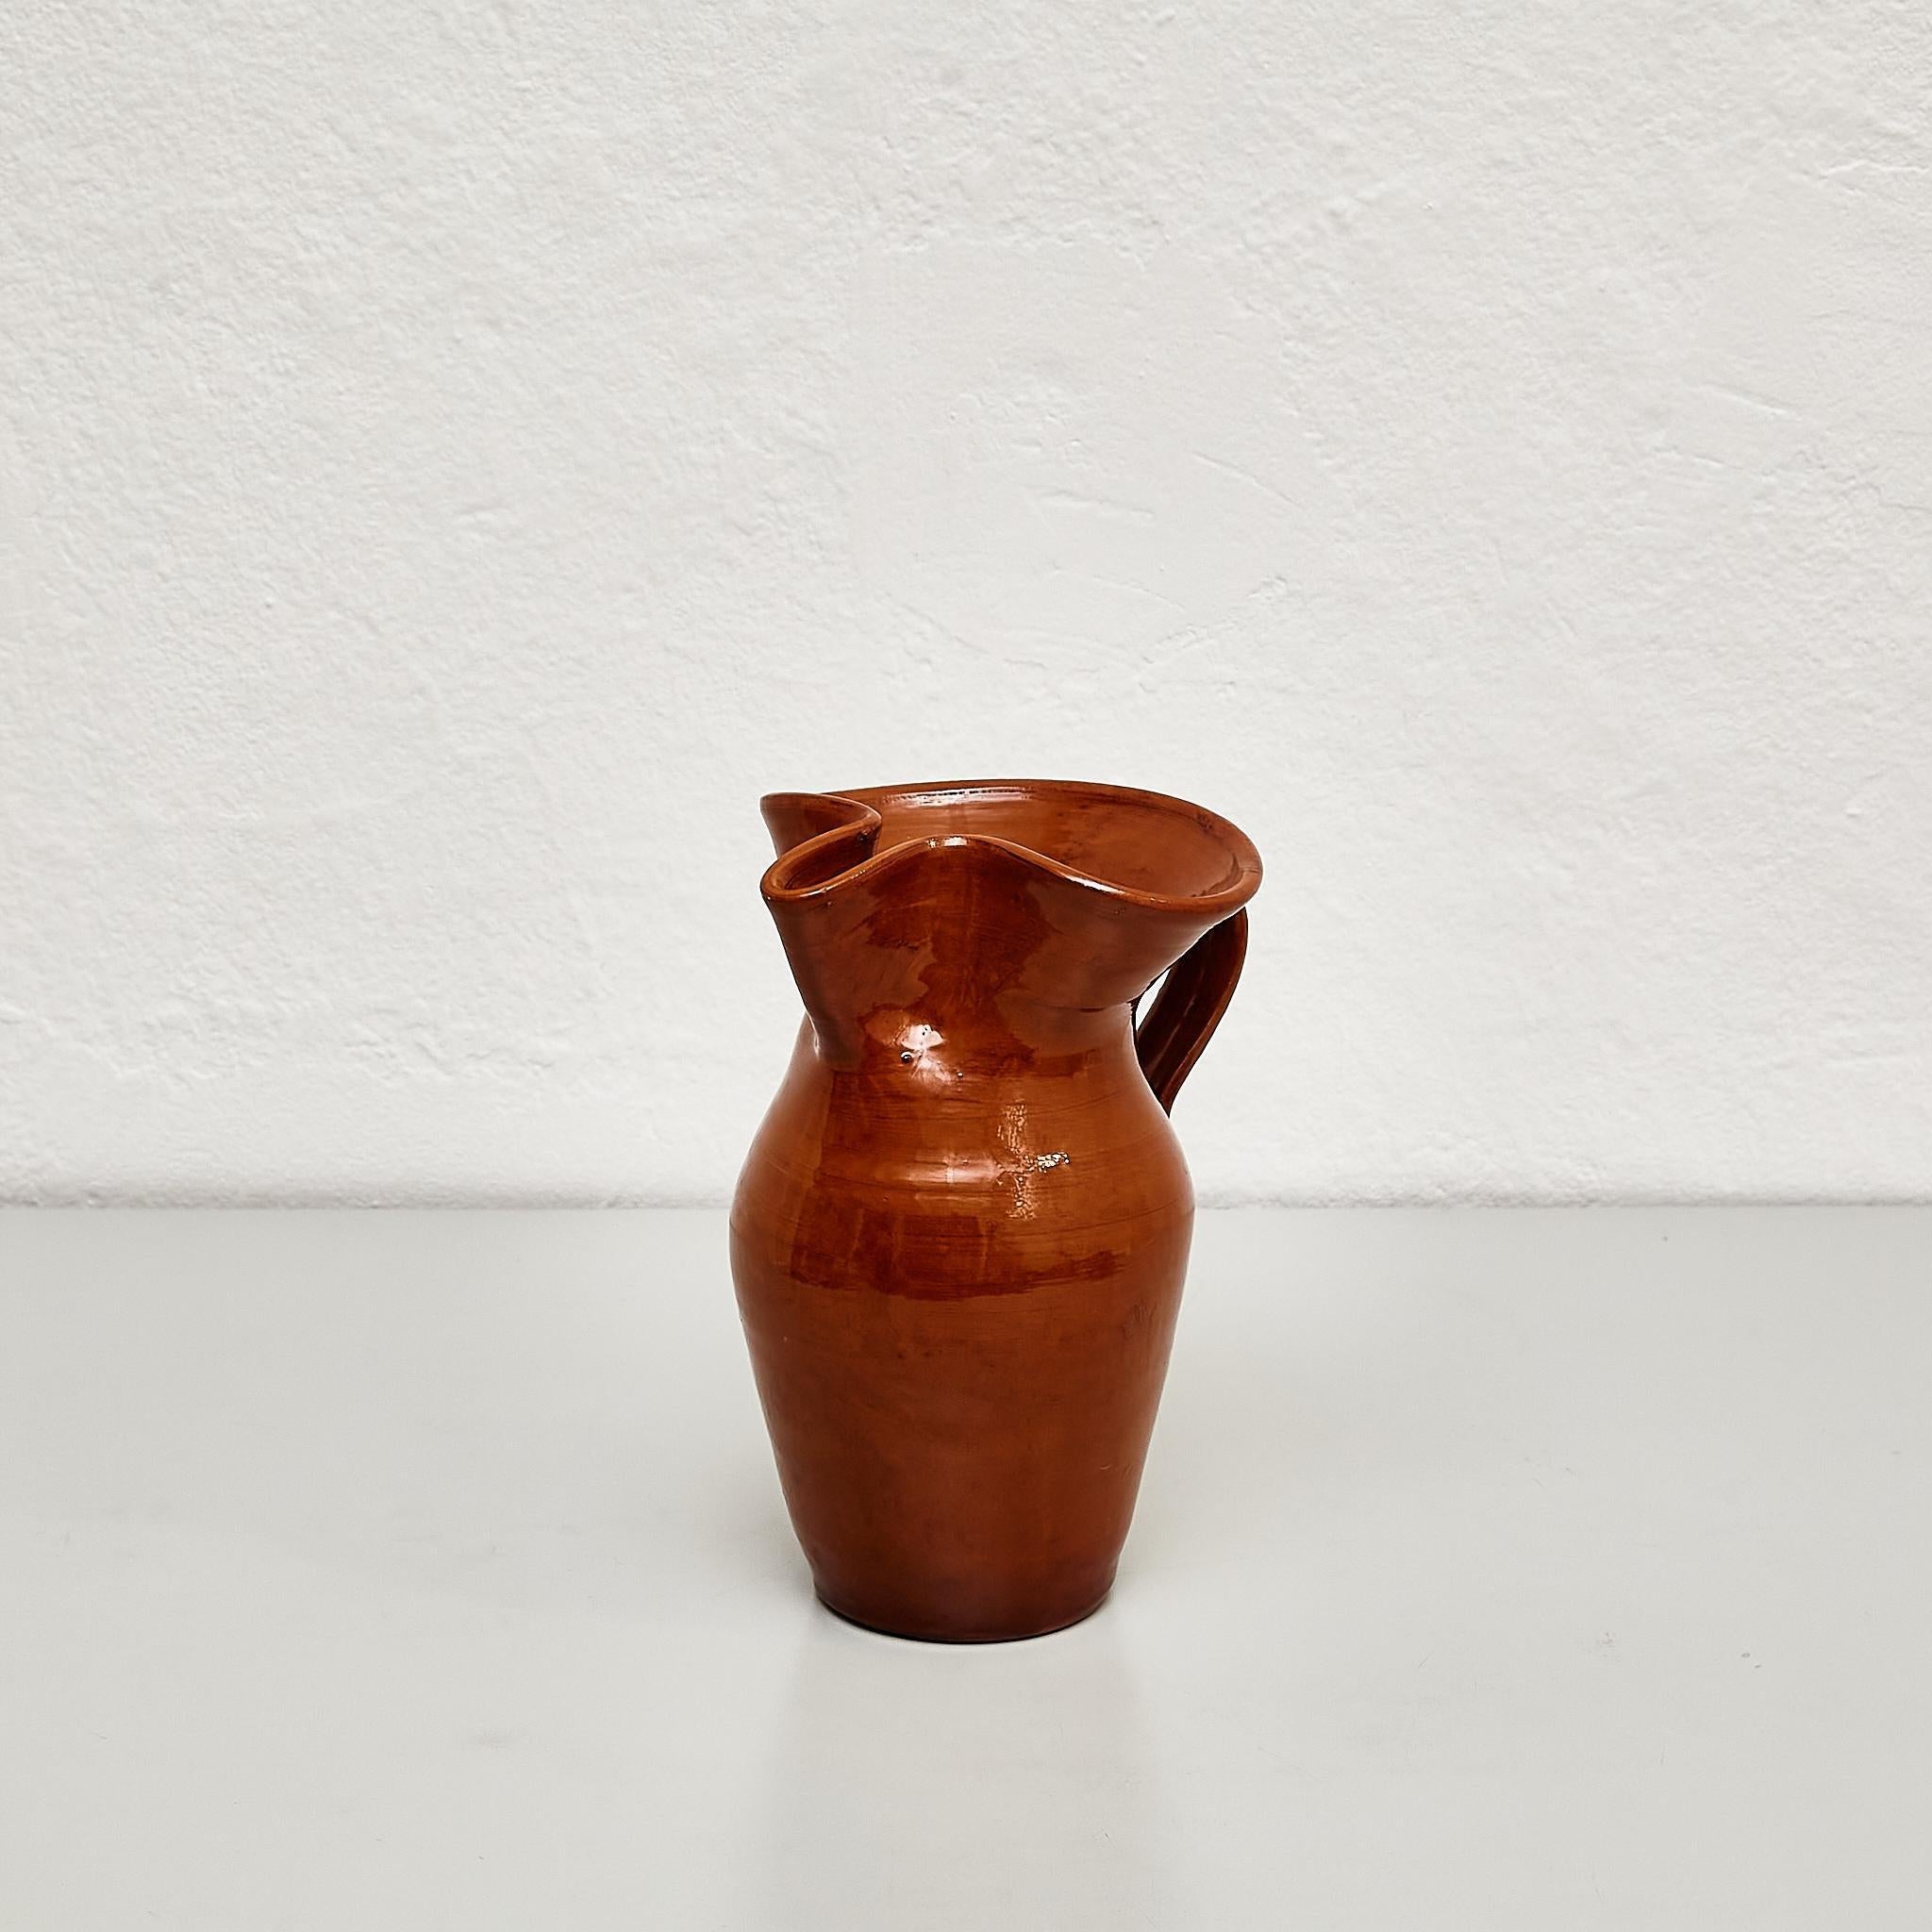 Traditionelle spanische Keramikvase aus der Mitte des 20. Jahrhunderts.

Hergestellt in Spanien.

In ursprünglichem Zustand mit geringen Gebrauchsspuren, die dem Alter und dem Gebrauch entsprechen, wobei eine schöne Patina erhalten